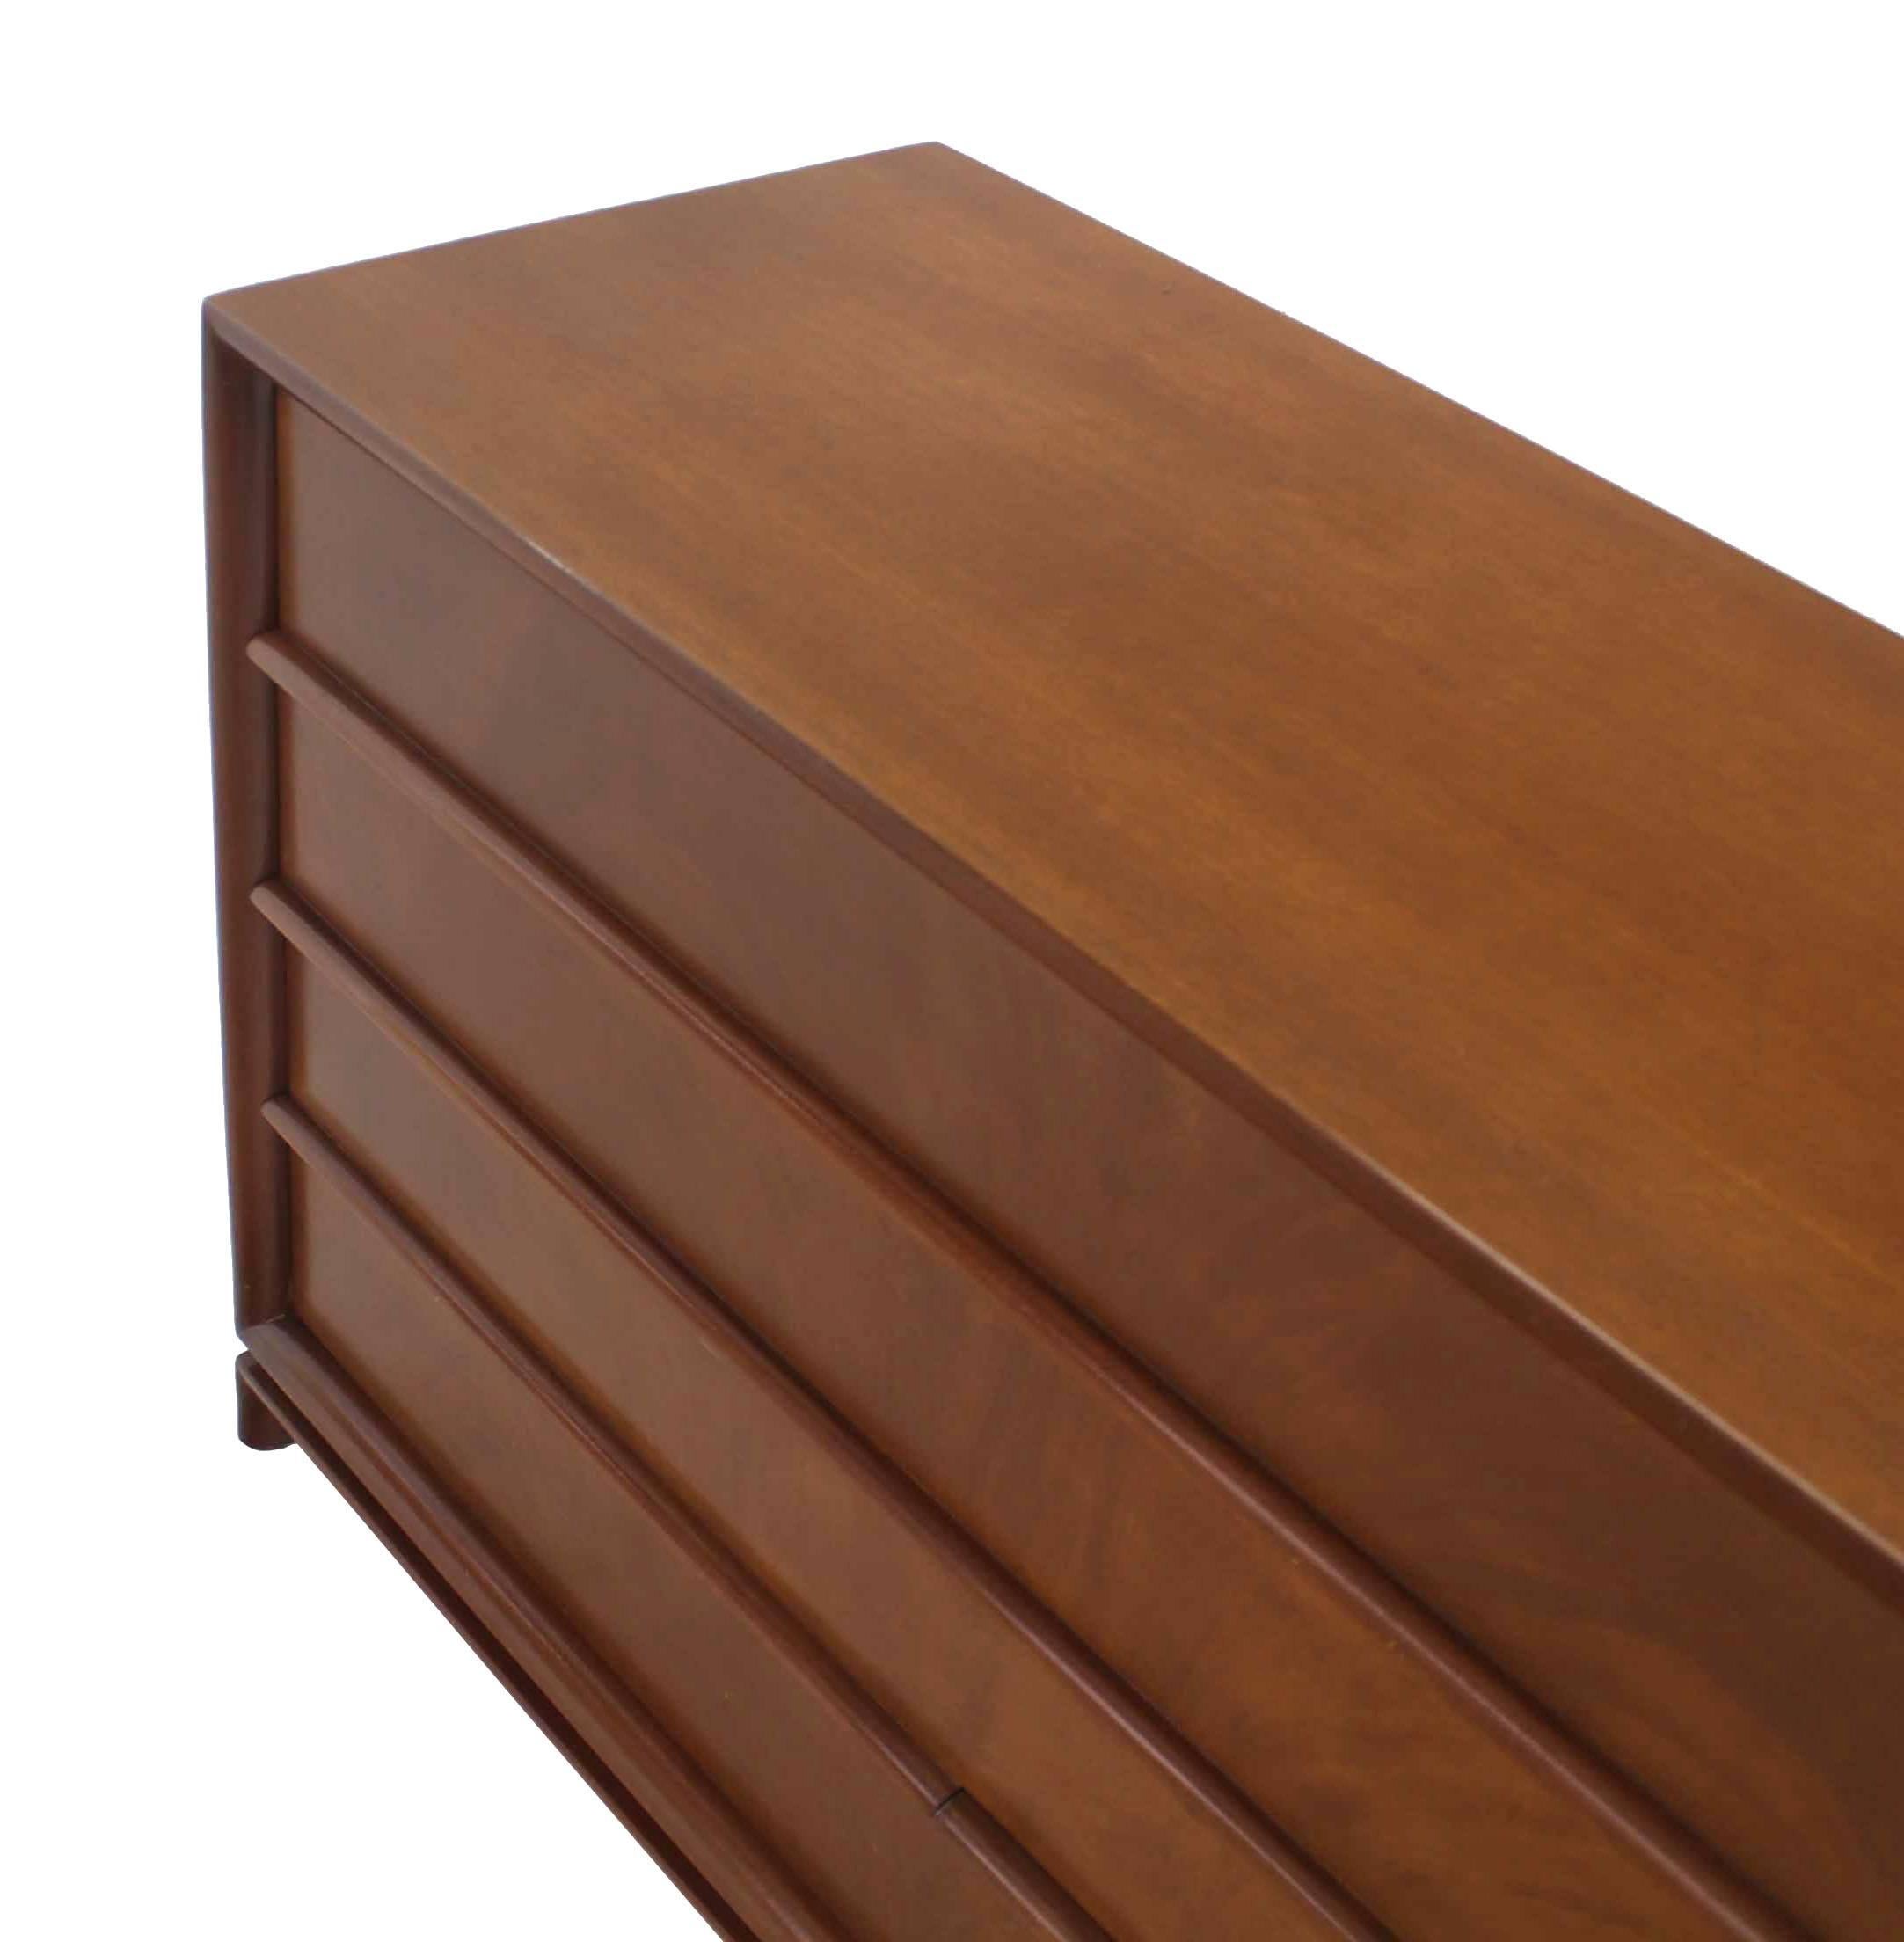 Walnut Mid-Century Modern Four-Drawer Chest Dresser